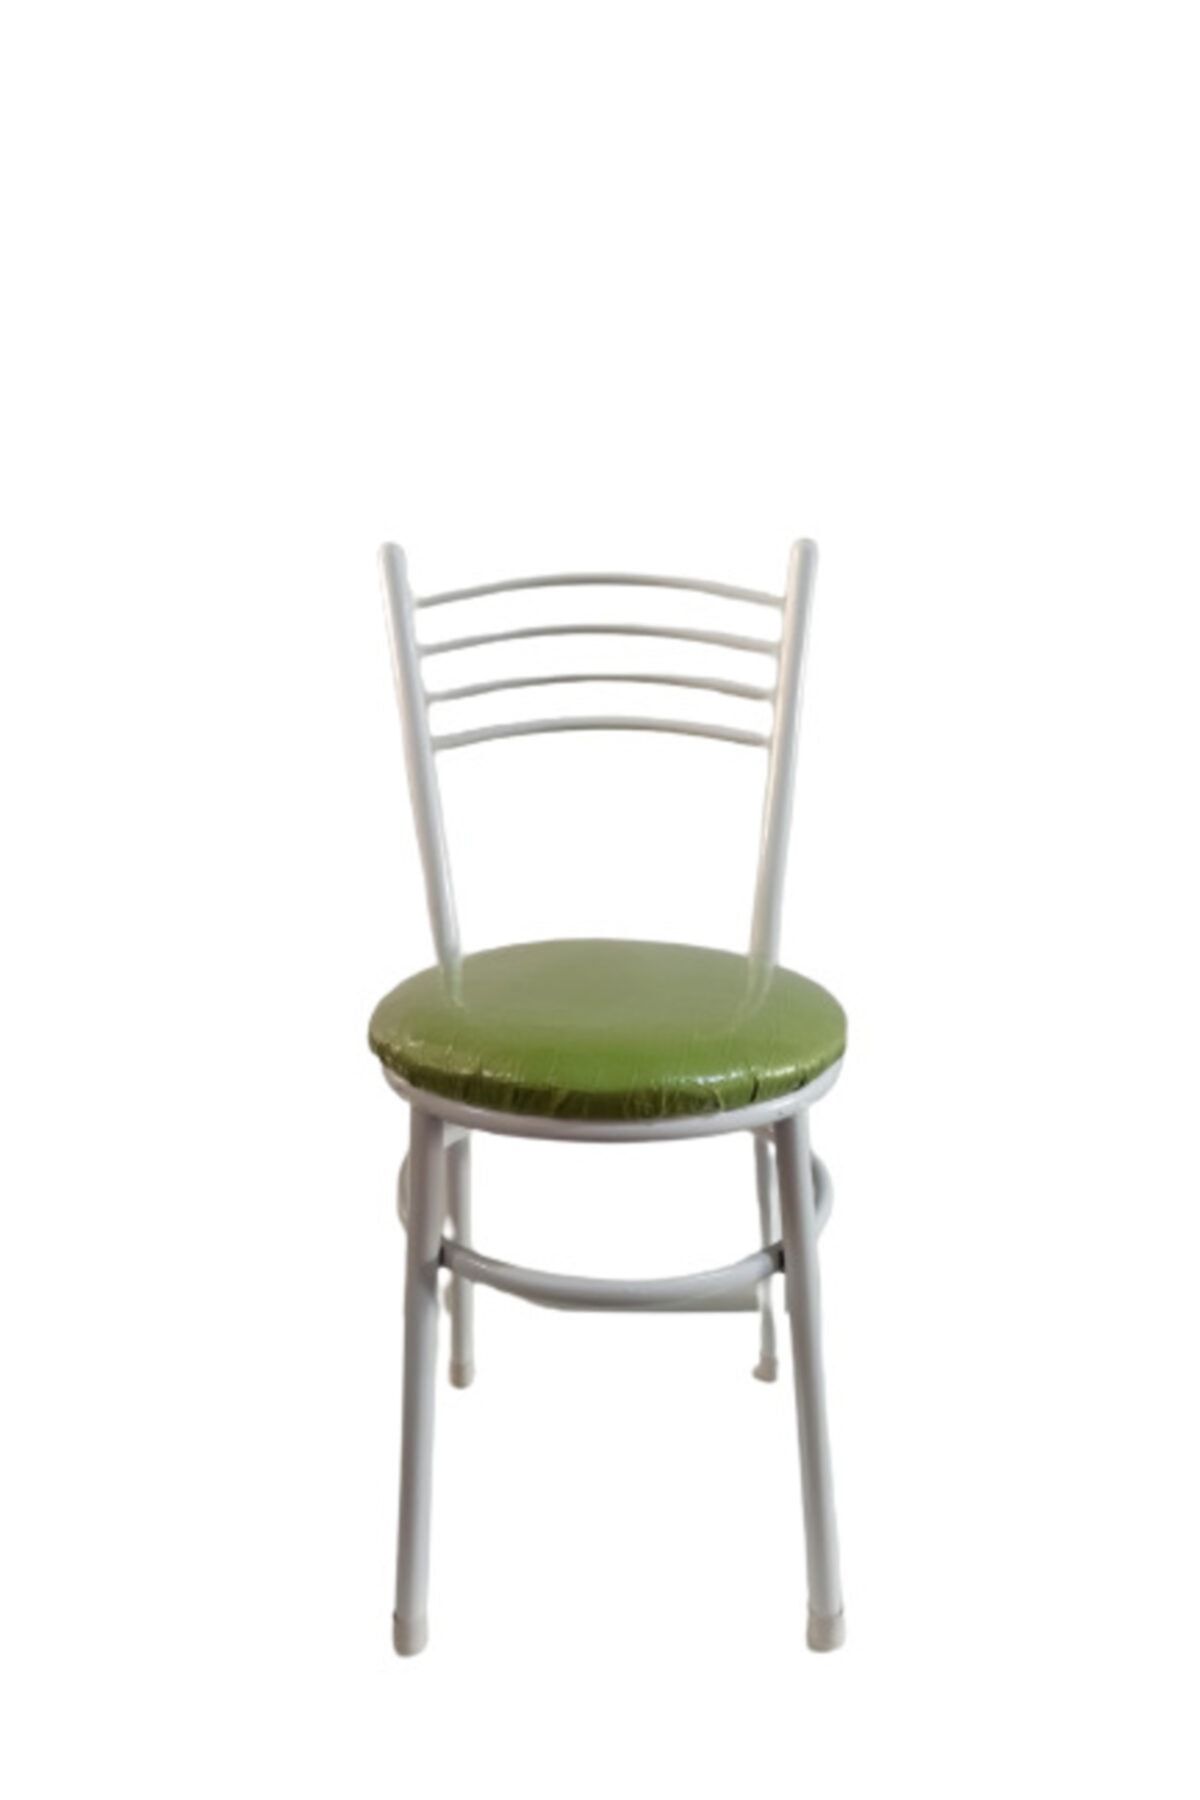 yılmaz masacılık Tatlı 2 Adet Yeşil Mutfak Bahçe Sandalyesi